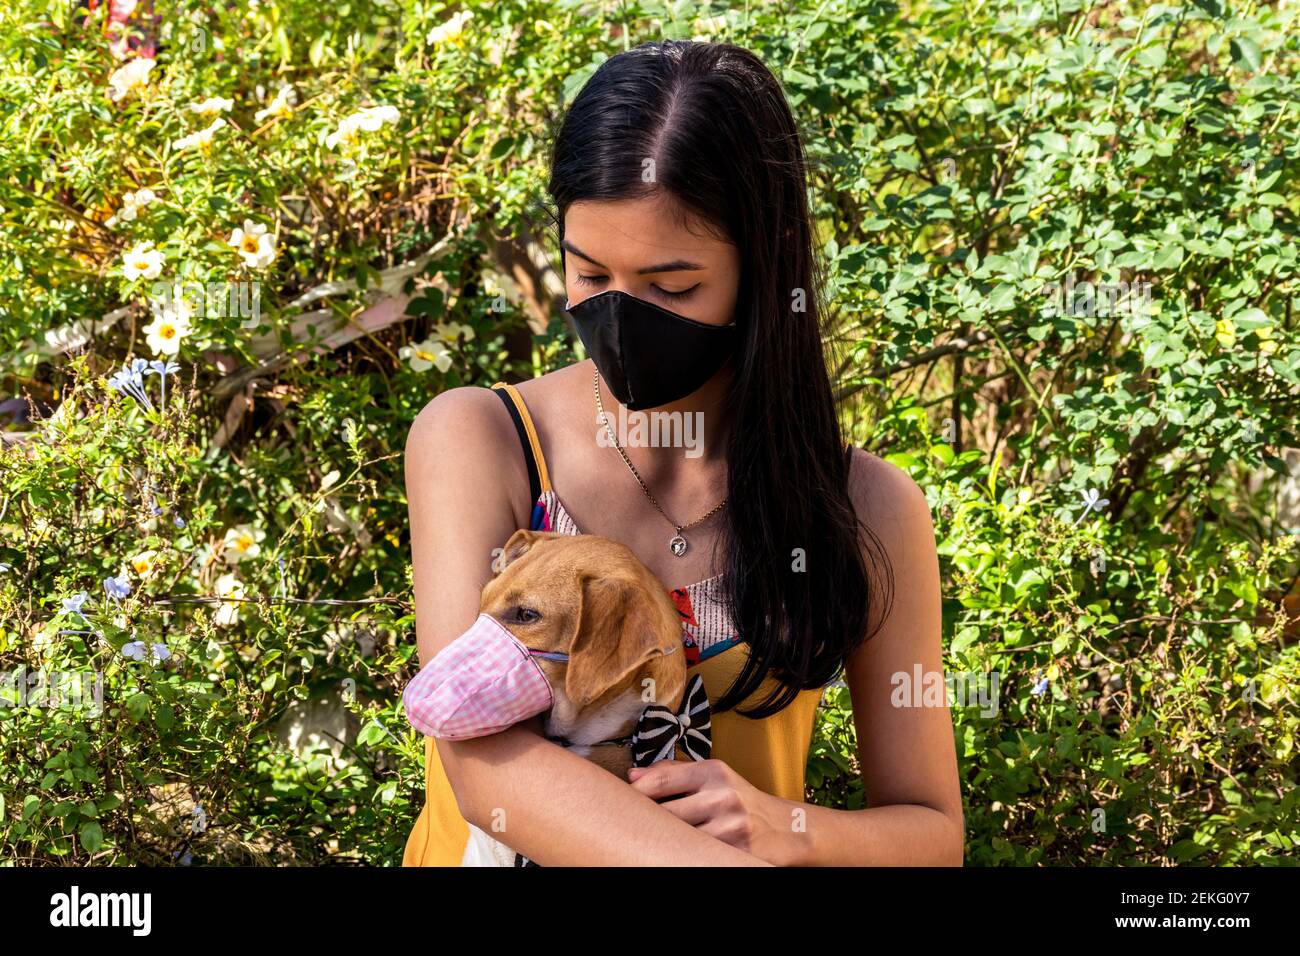 Ein junges lateinisches Mädchen in einem kubanischen Garten, das ihren Hund anschaut, während sie sie in den Armen hält, beide tragen selbstgemachte Masken Stockfoto